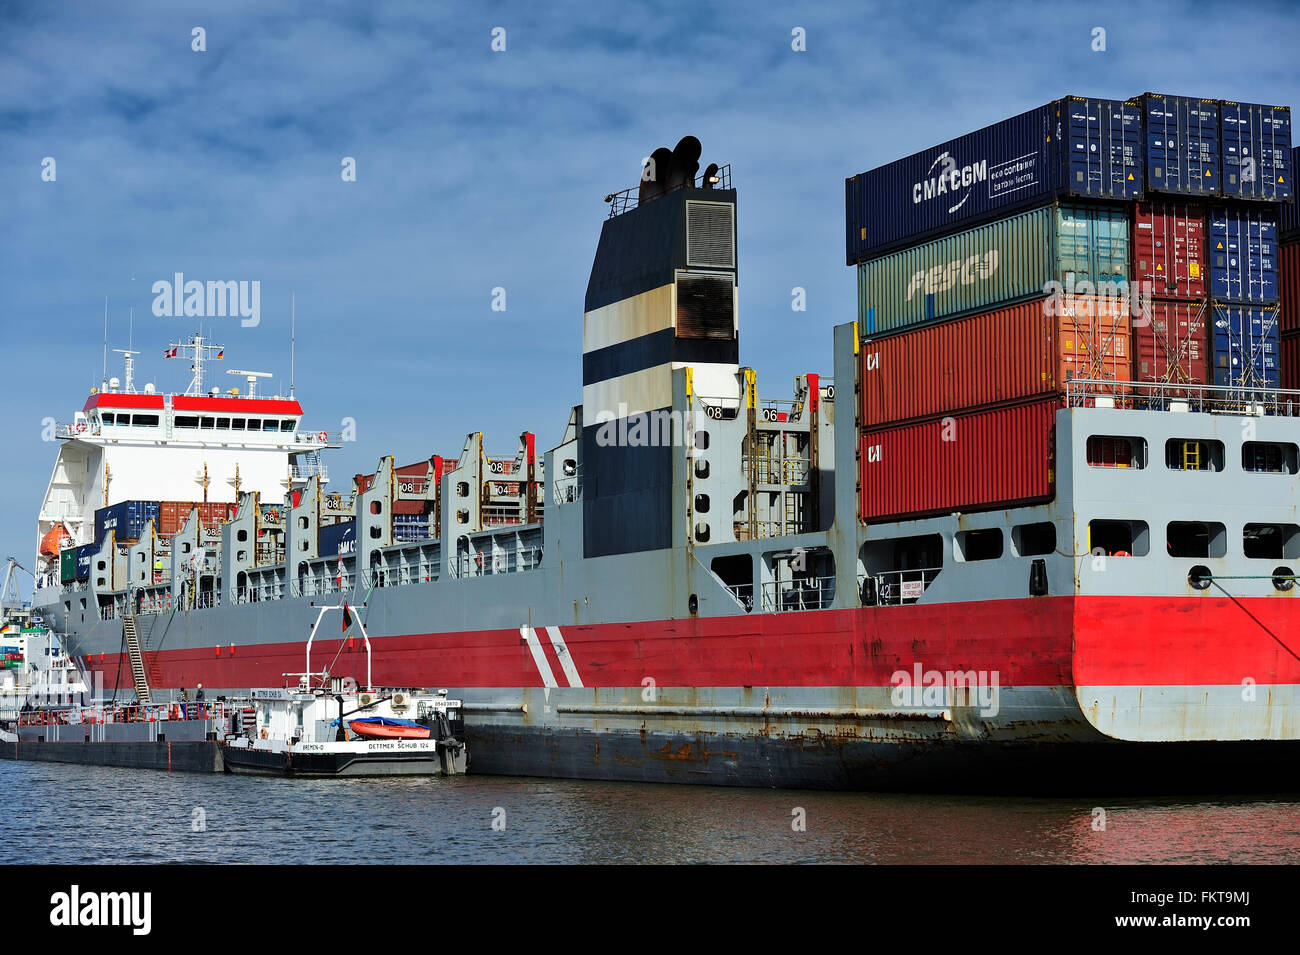 HAMBURG, Deutschland - Containerschiff im Hamburger Hafen (Hamburger Hafen) ist eine deutsche Hafenstadt an der Elbe Stockfoto